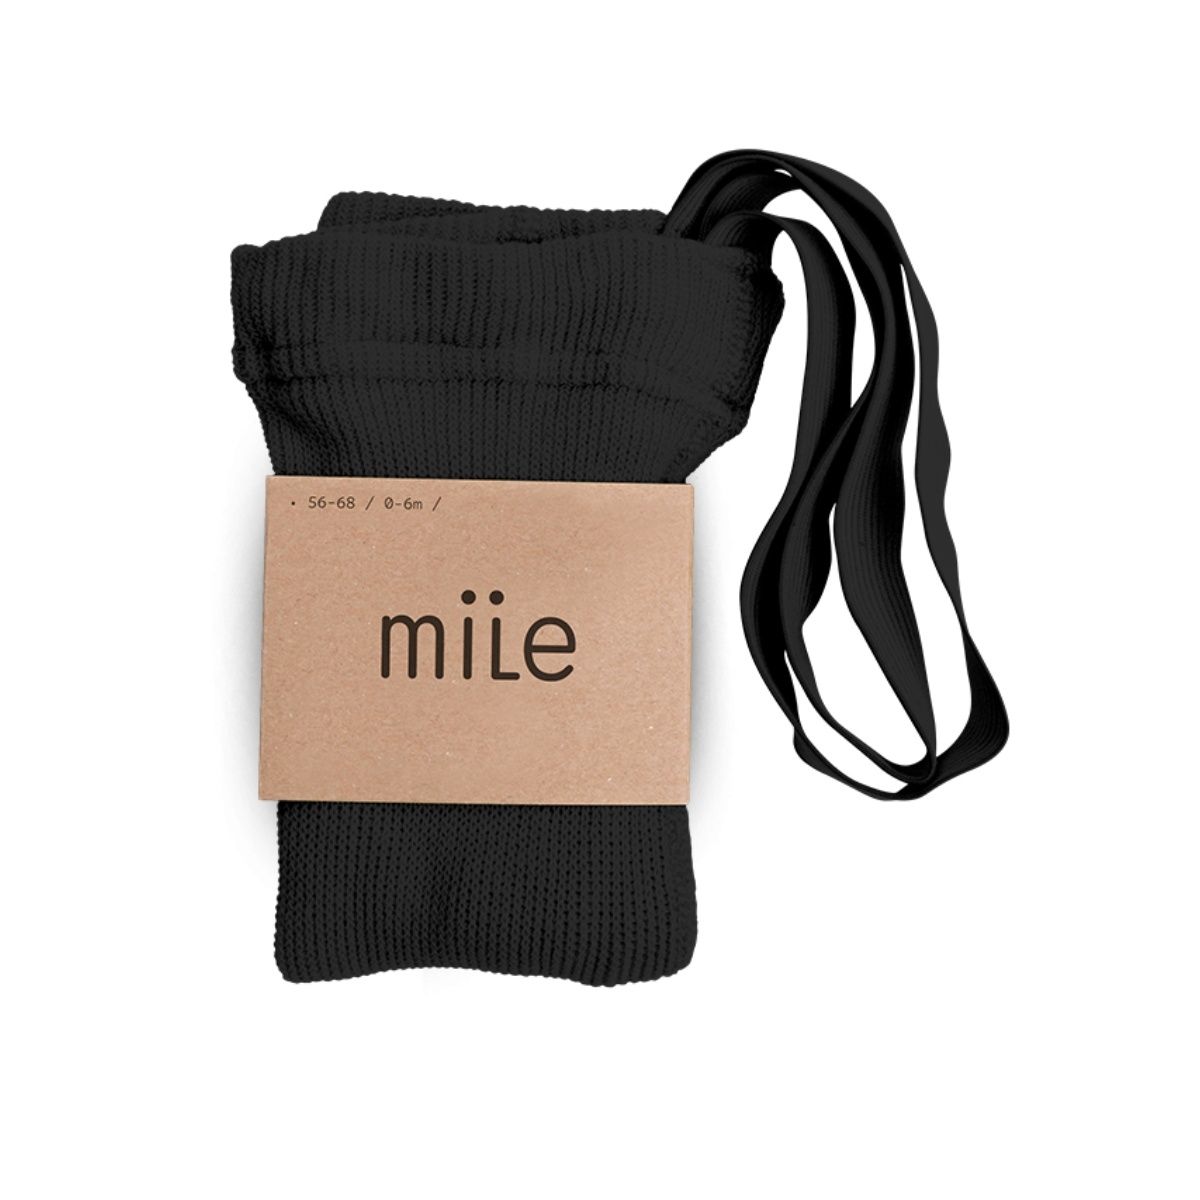 Mile - Cotton tights with braces black - Strumpfhosen und